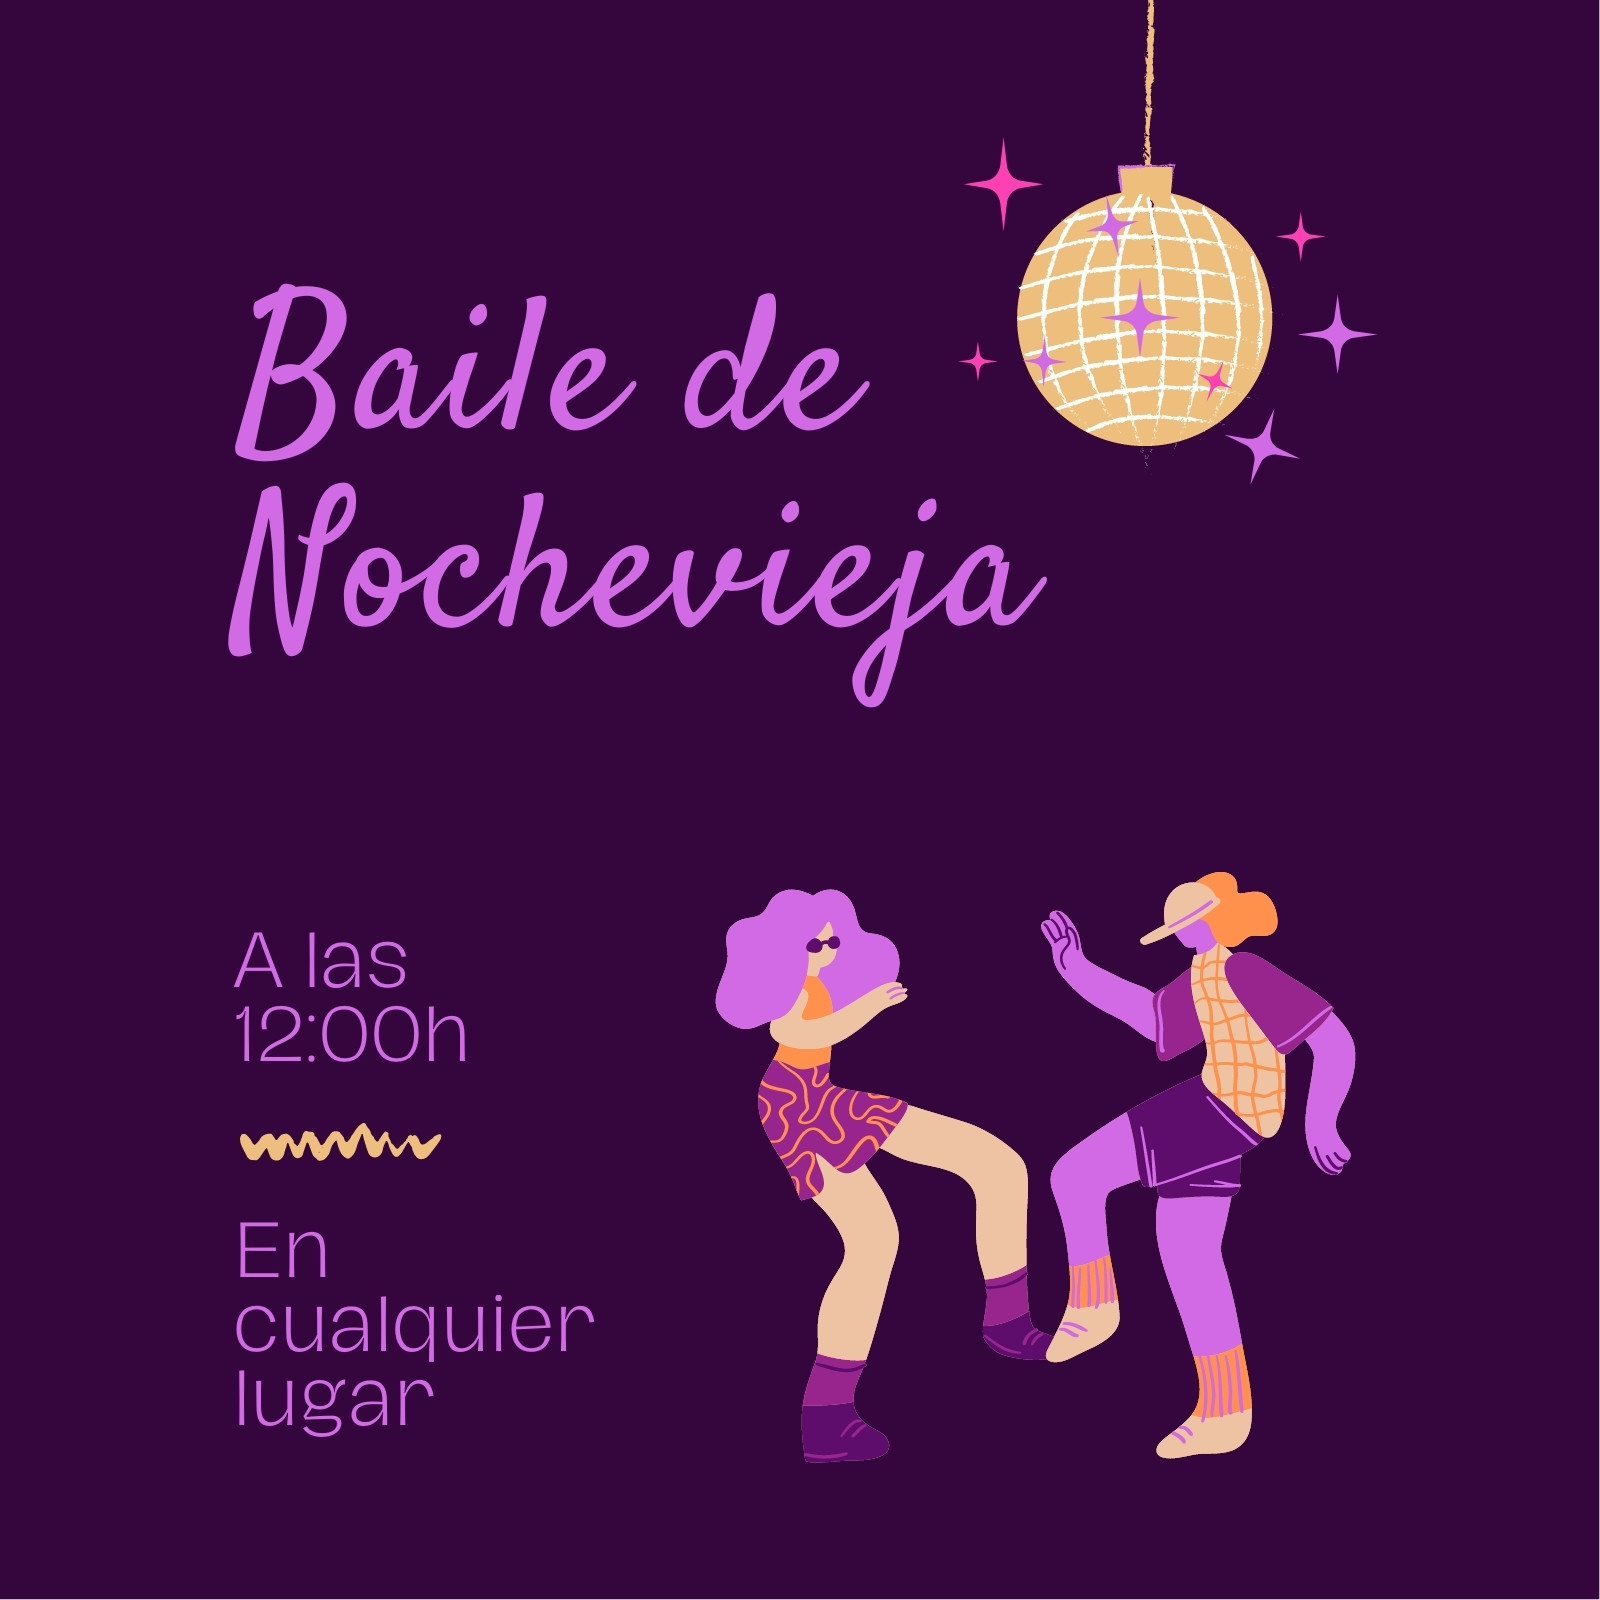 Invitación cuadrada baile de nochevieja ilustrada lila